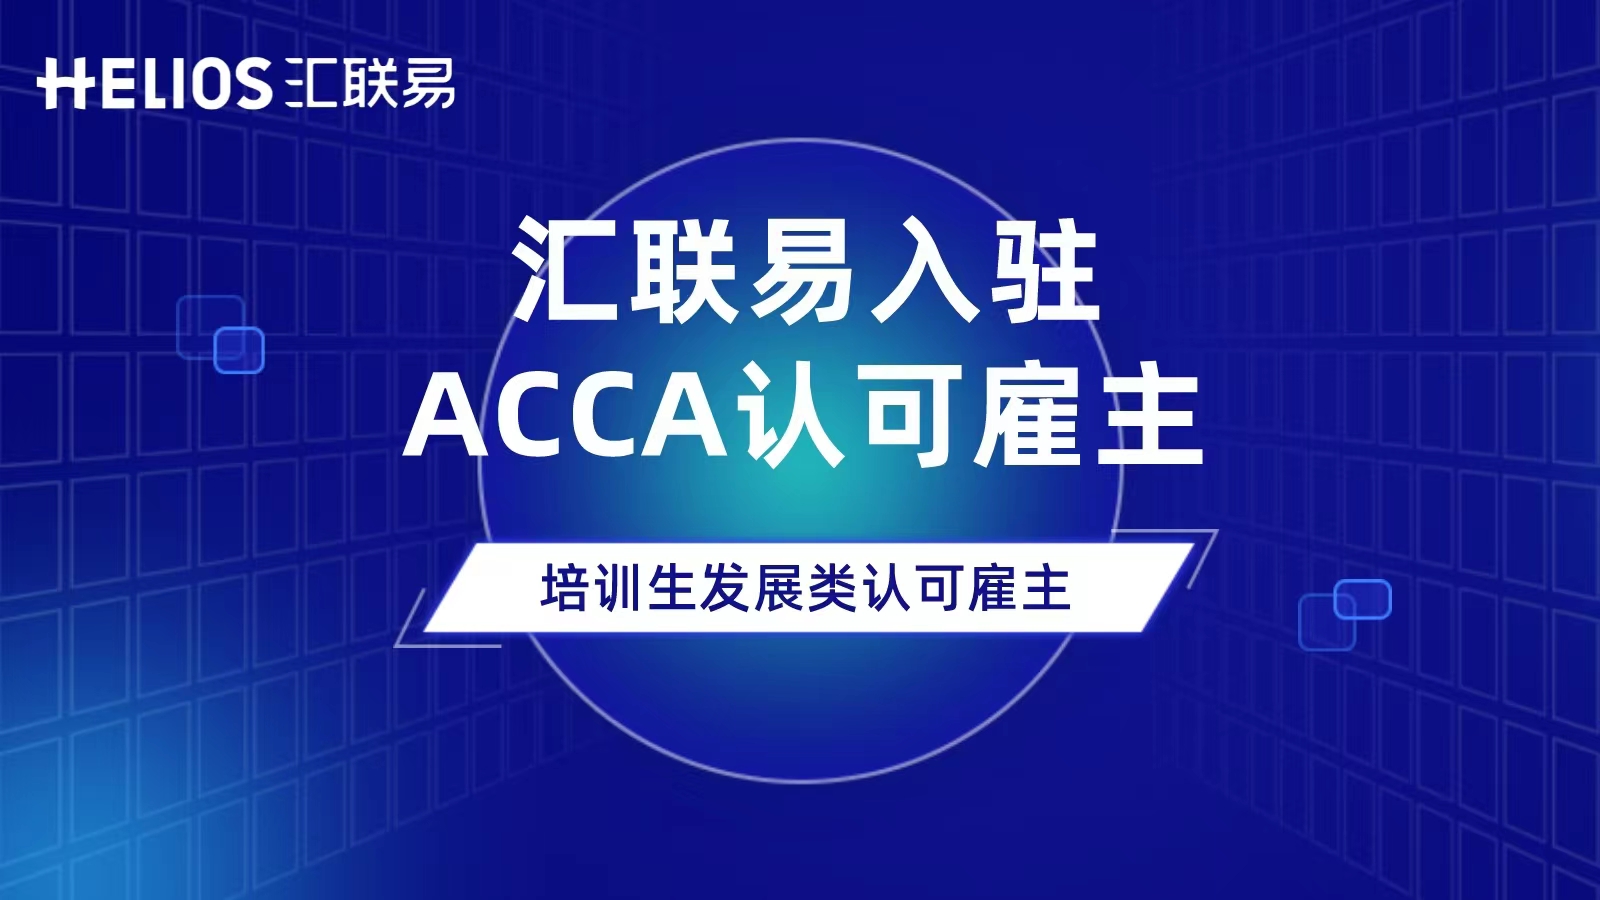 汇联易入驻ACCA认可雇主，未来将在人才培育持续加码！